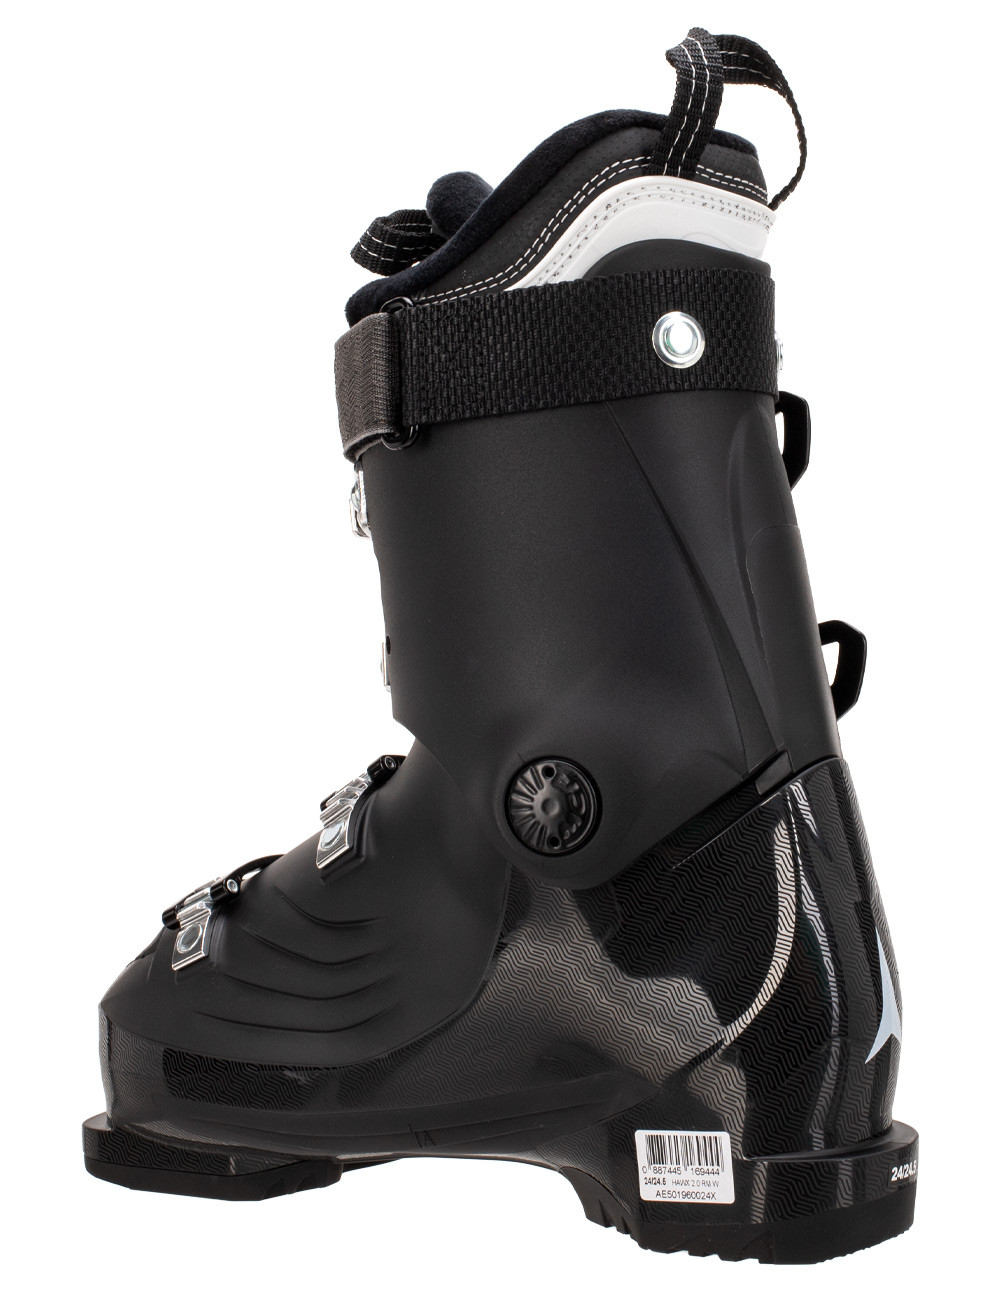 Ботинки горнолыжные Atomic Hawx 2.0 RM W Black/Berry, размер 23,0/23,5 см - фото 3